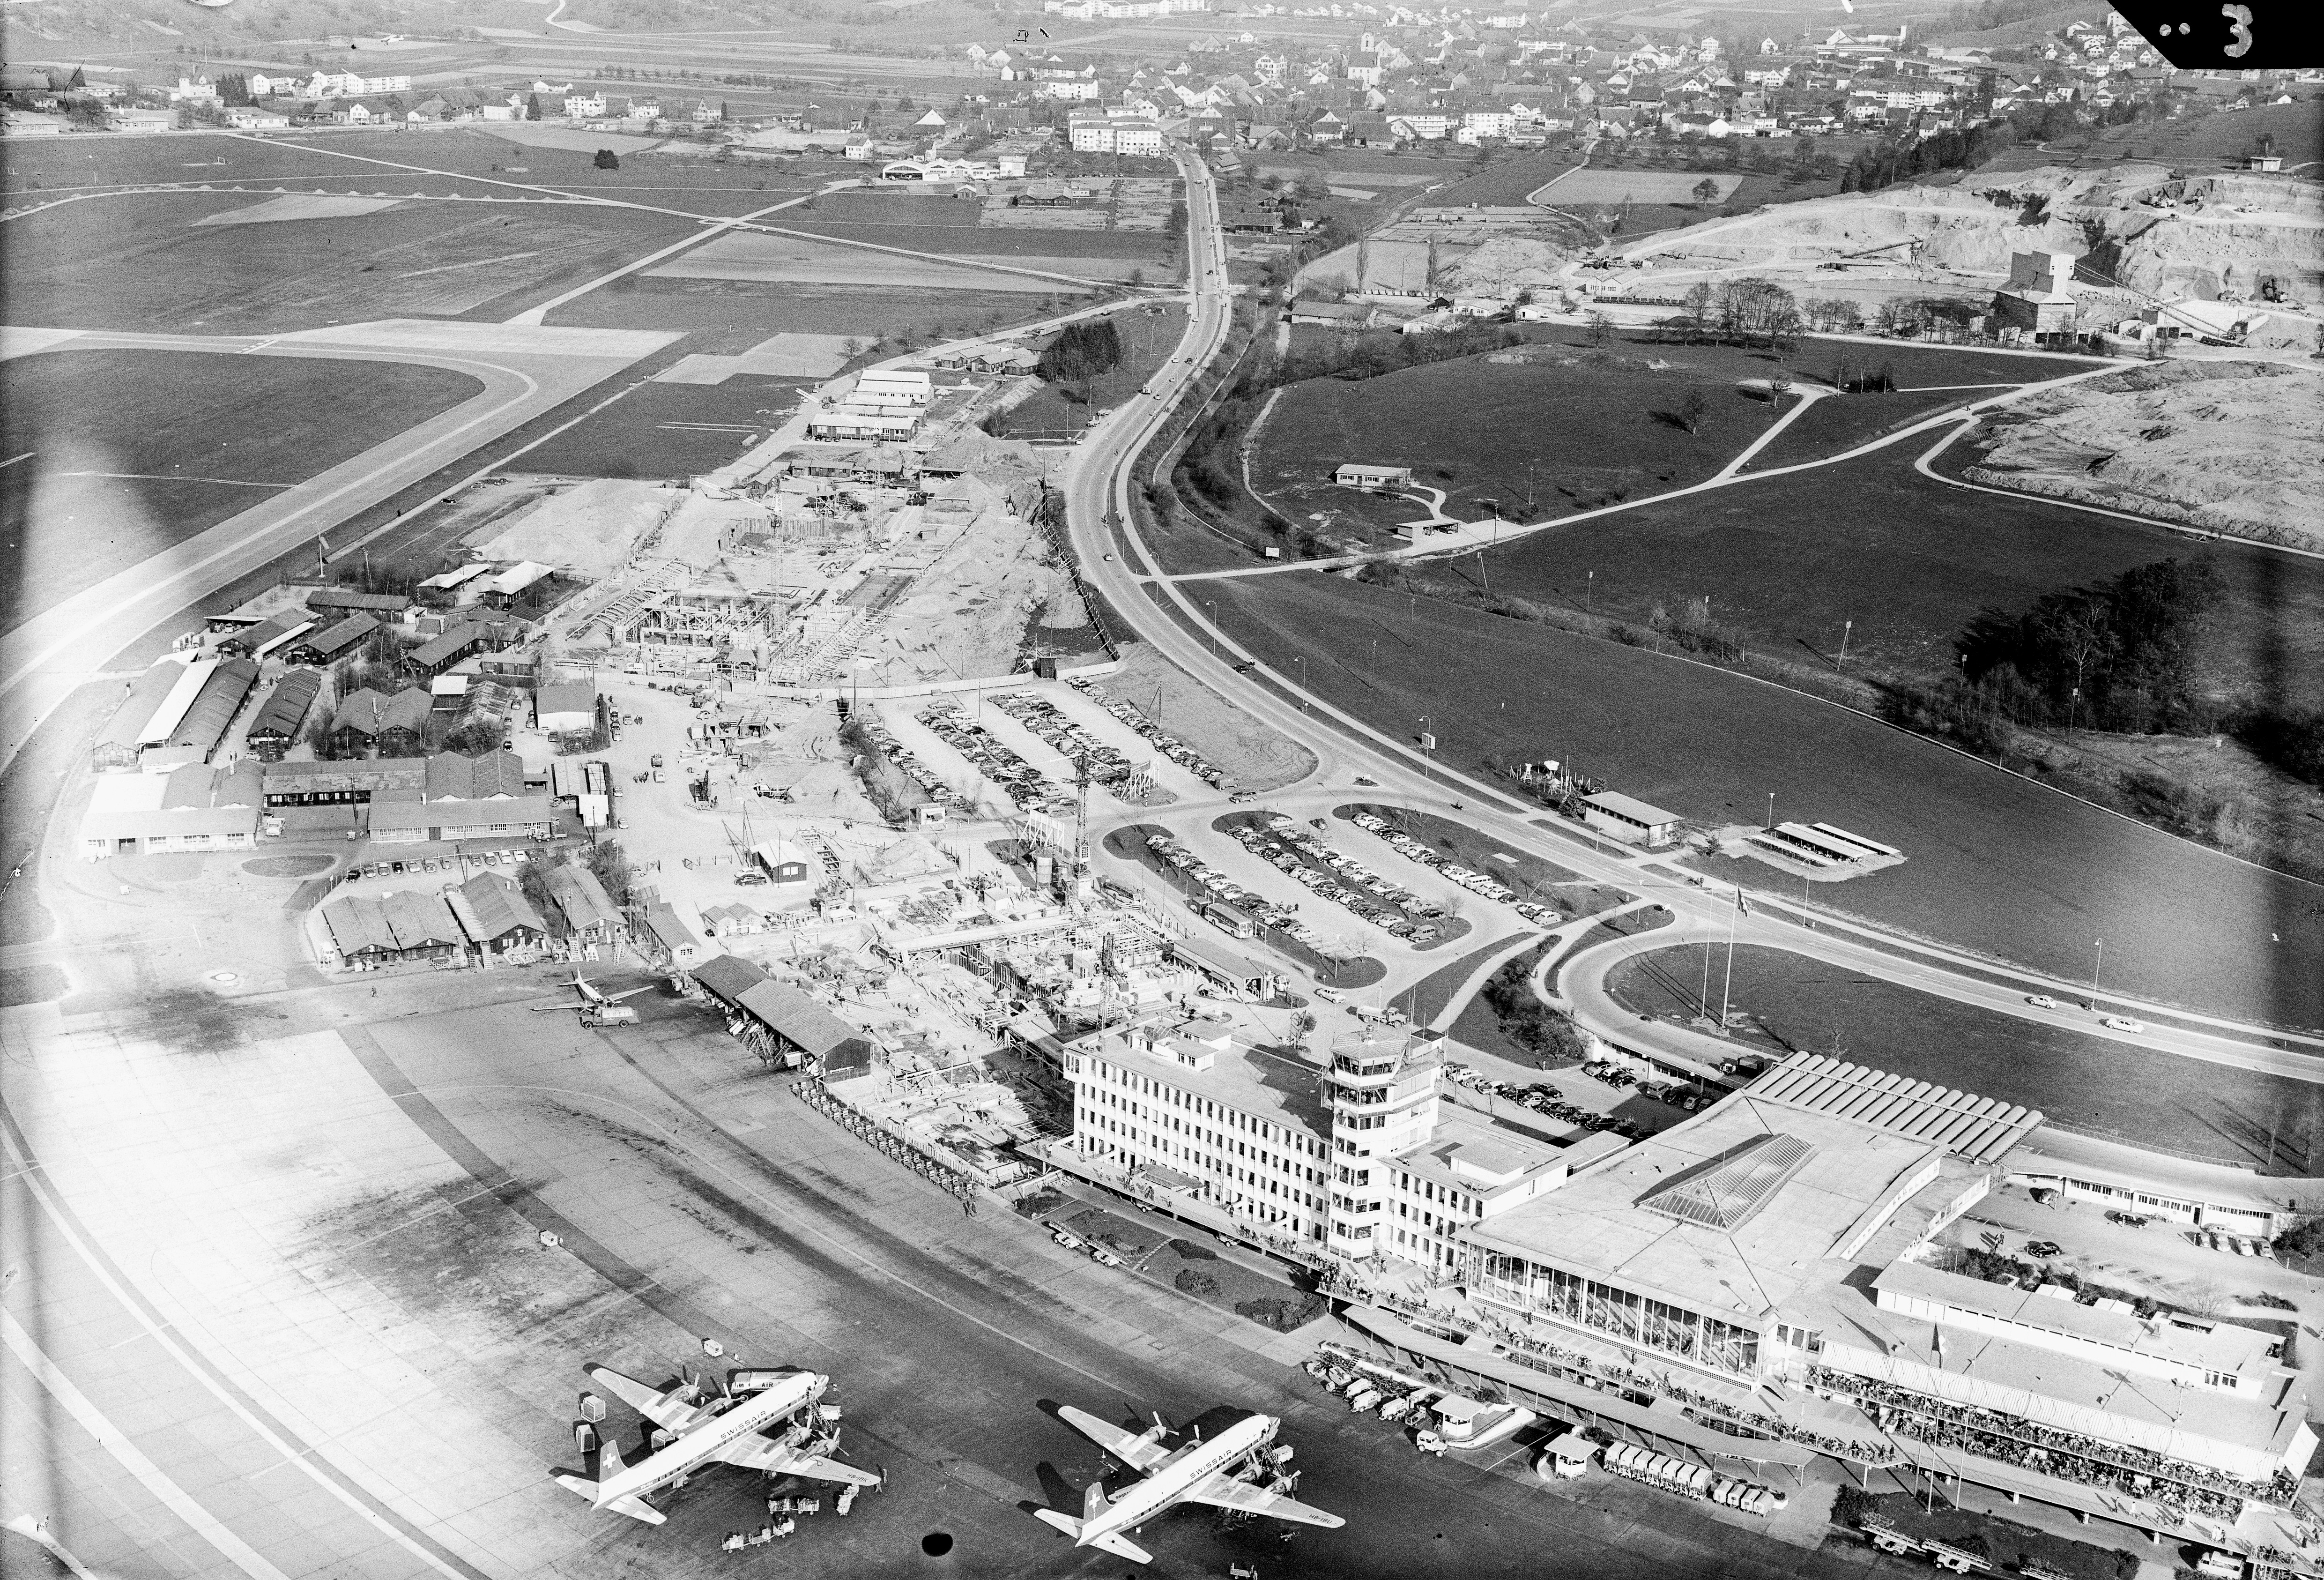 Flughafen Zürich im Jahr 1959